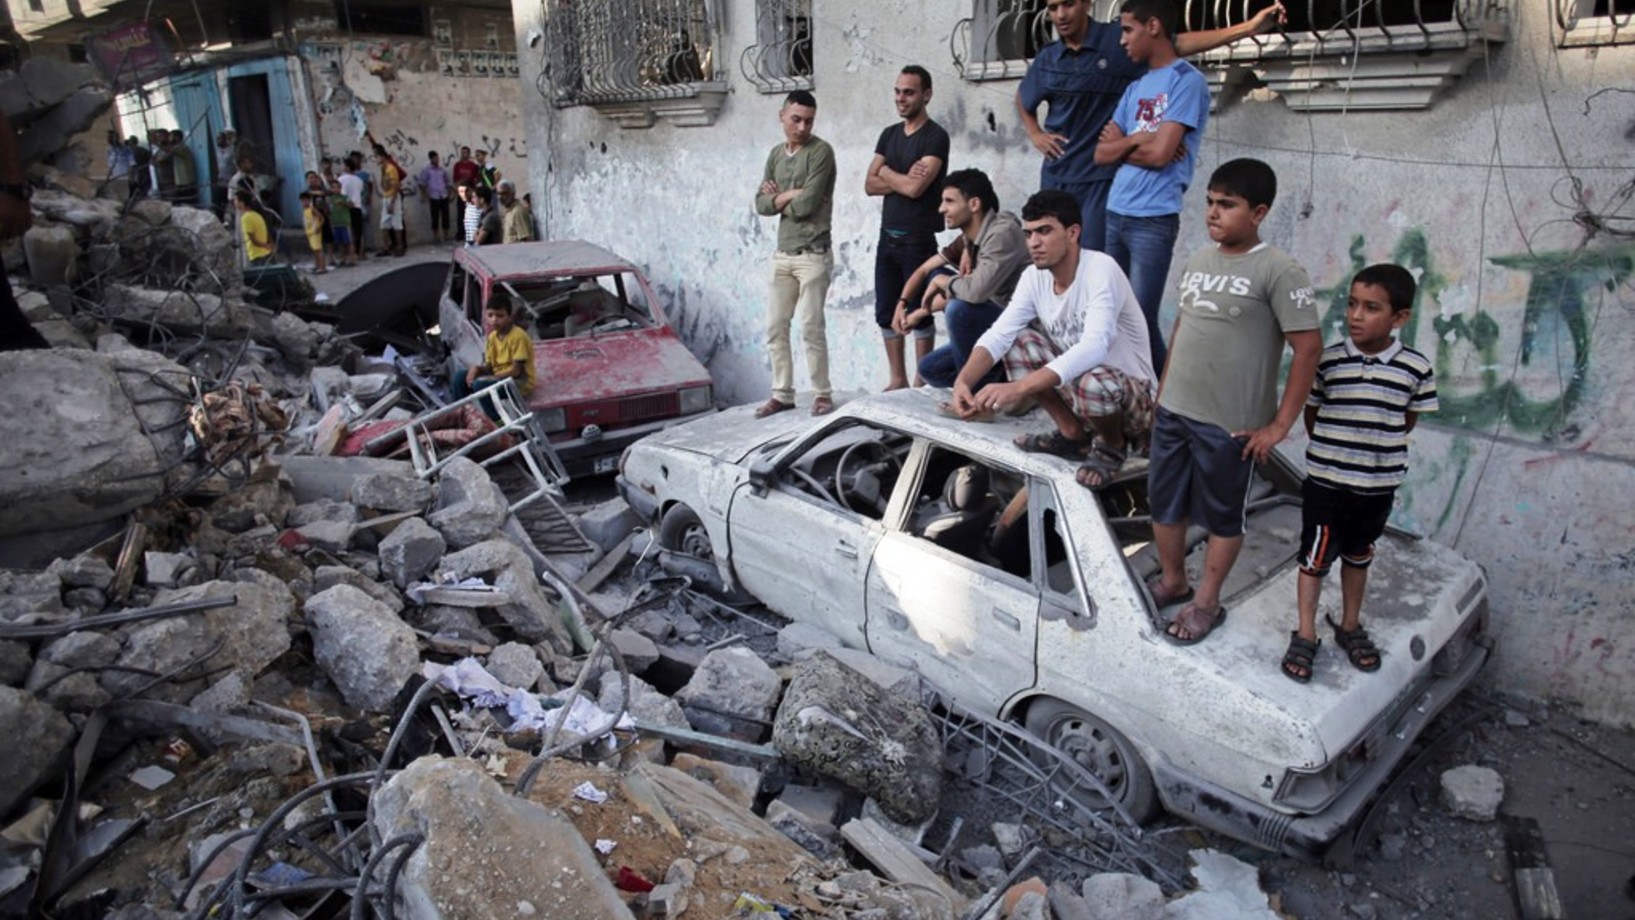 Palästinenser auf den Trümmern ihres Hauses im Rafah-Flüchtlingscamp im Gaza-Streifen. Fünf Mitglieder der Familie Ghannam sind bei dem israelischen Raketenangriff ums Leben gekommen. Israel bezeichnet die Luftschläge als Vergeltung für die Raketenangriffe der Hamas. 
(Foto: Keystone/AP/Khalil Hamra, File)